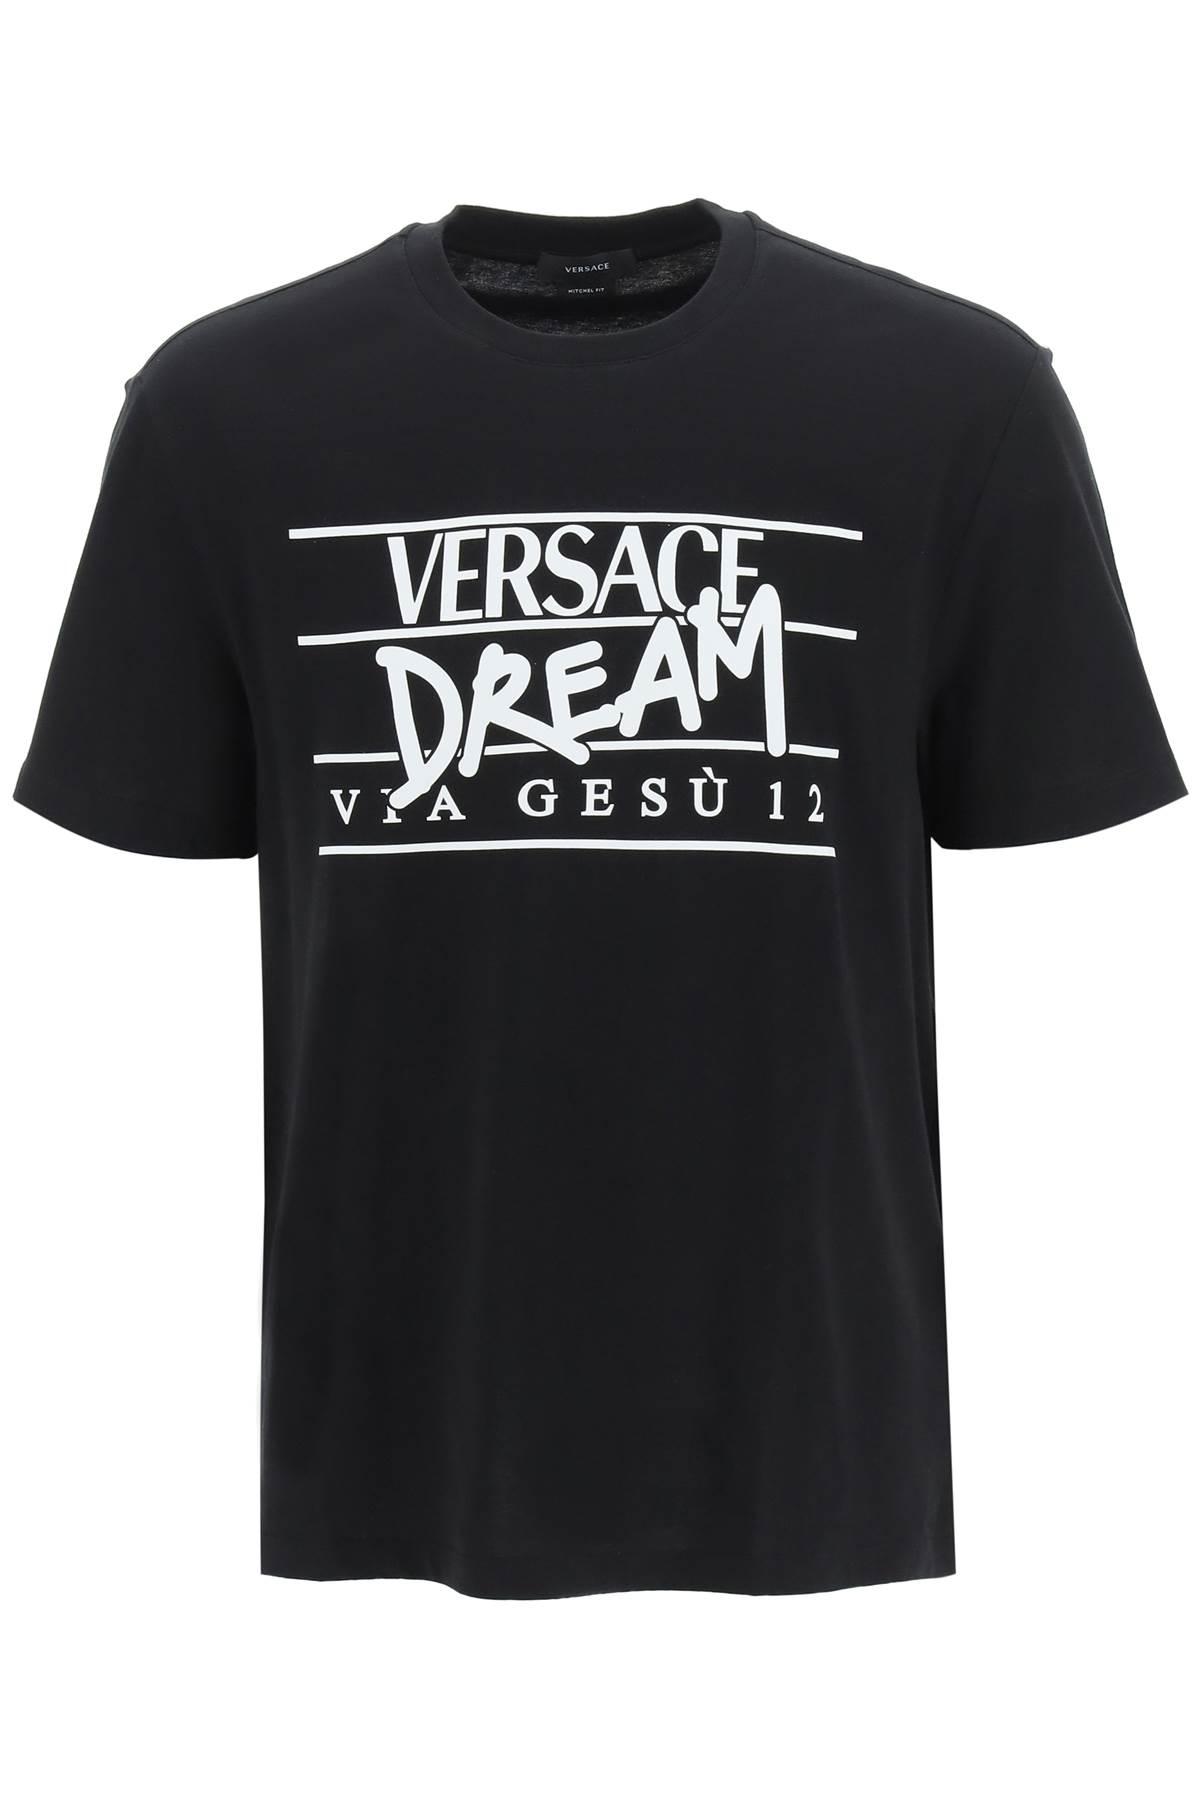 Versace Dream Logo T-shirt in Black for Men | Lyst